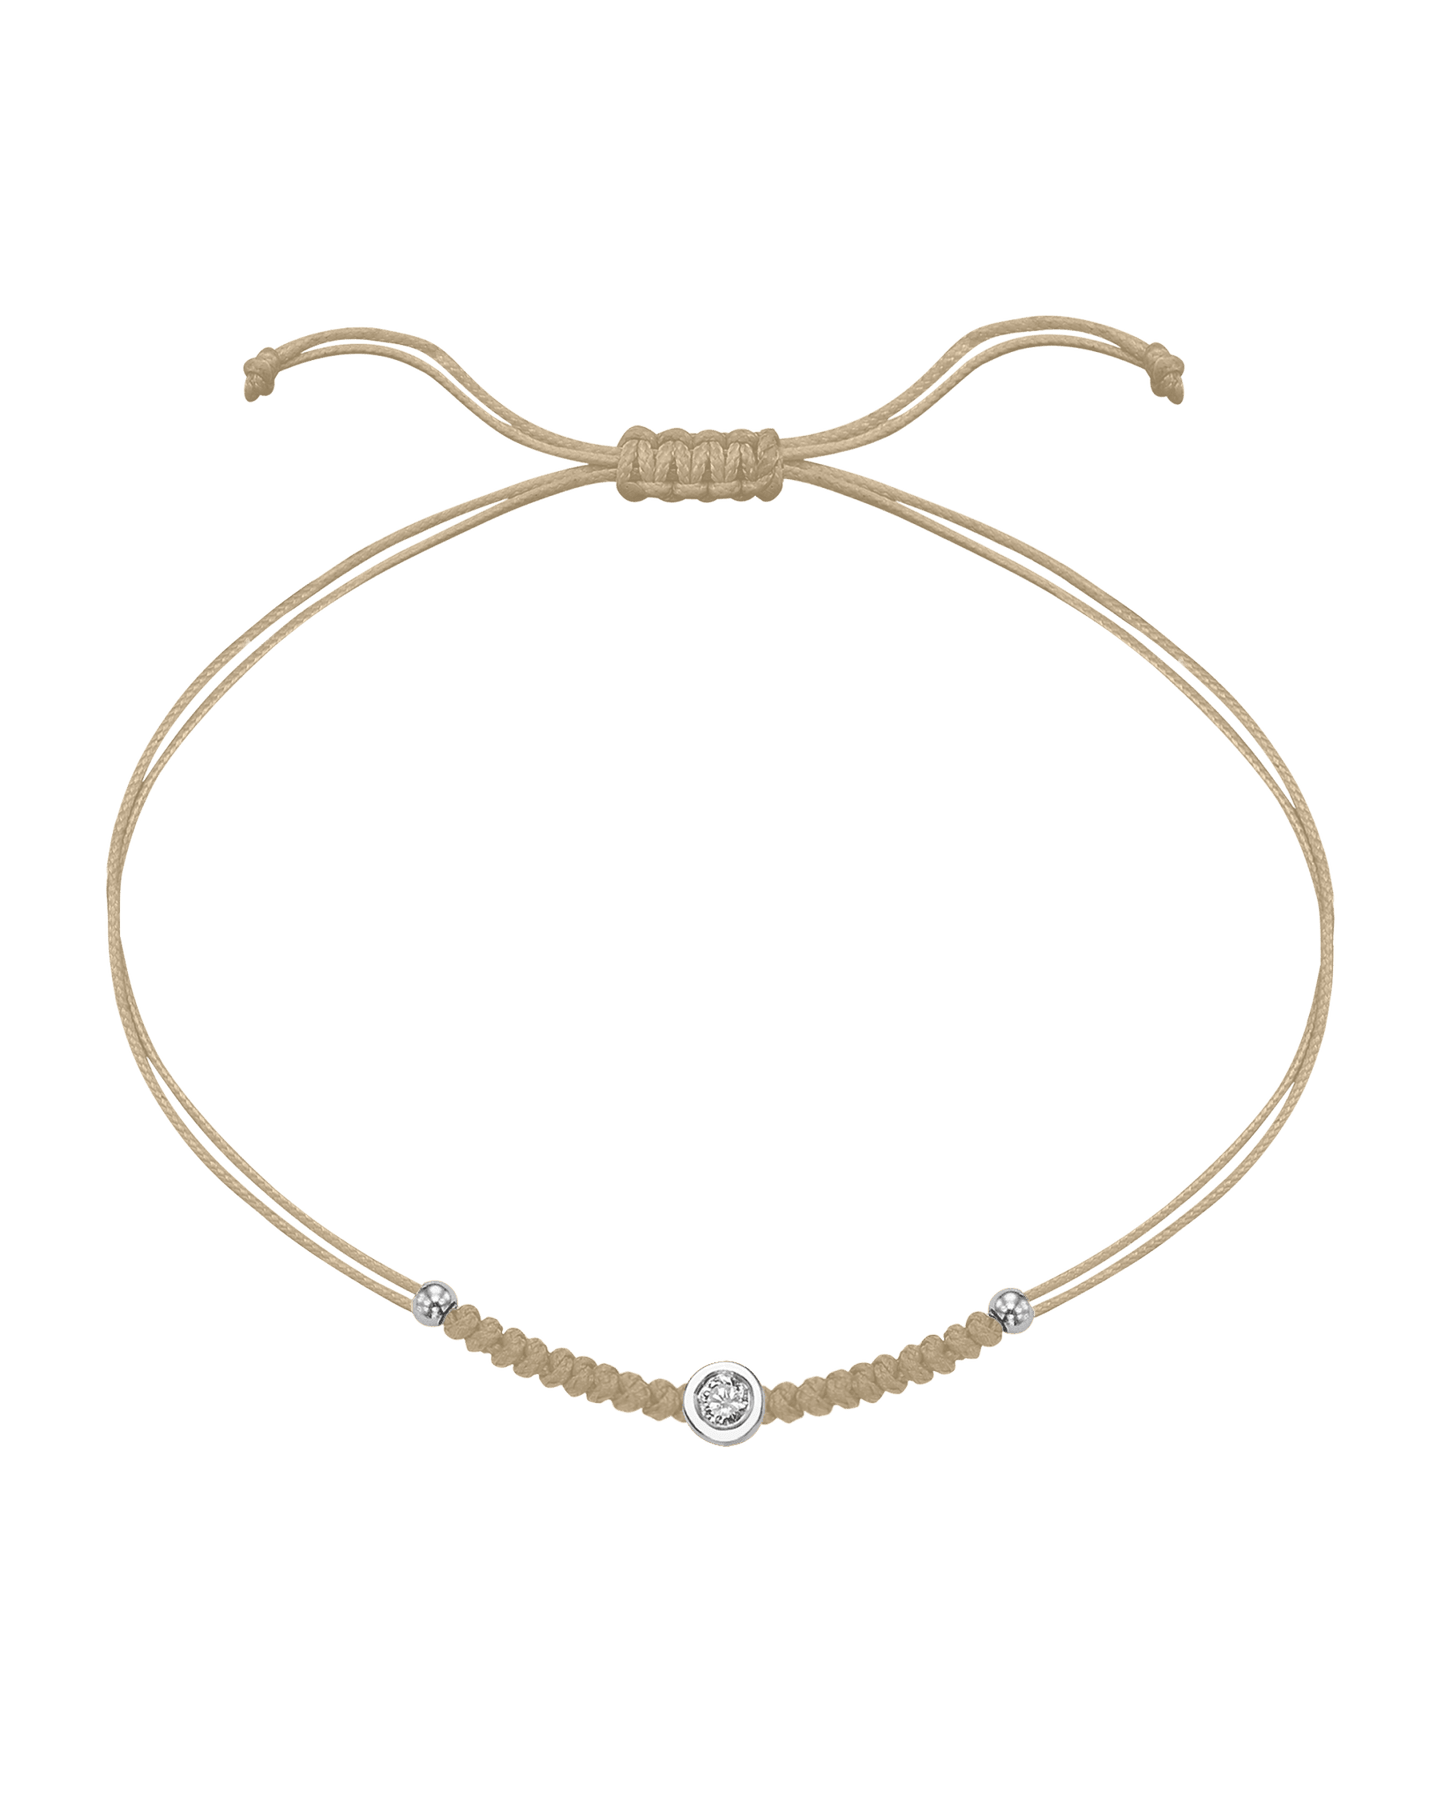 Solid Gold Sphere String of Love - 14K White Gold Bracelet 14K Solid Gold Beige Medium: 0.04ct 